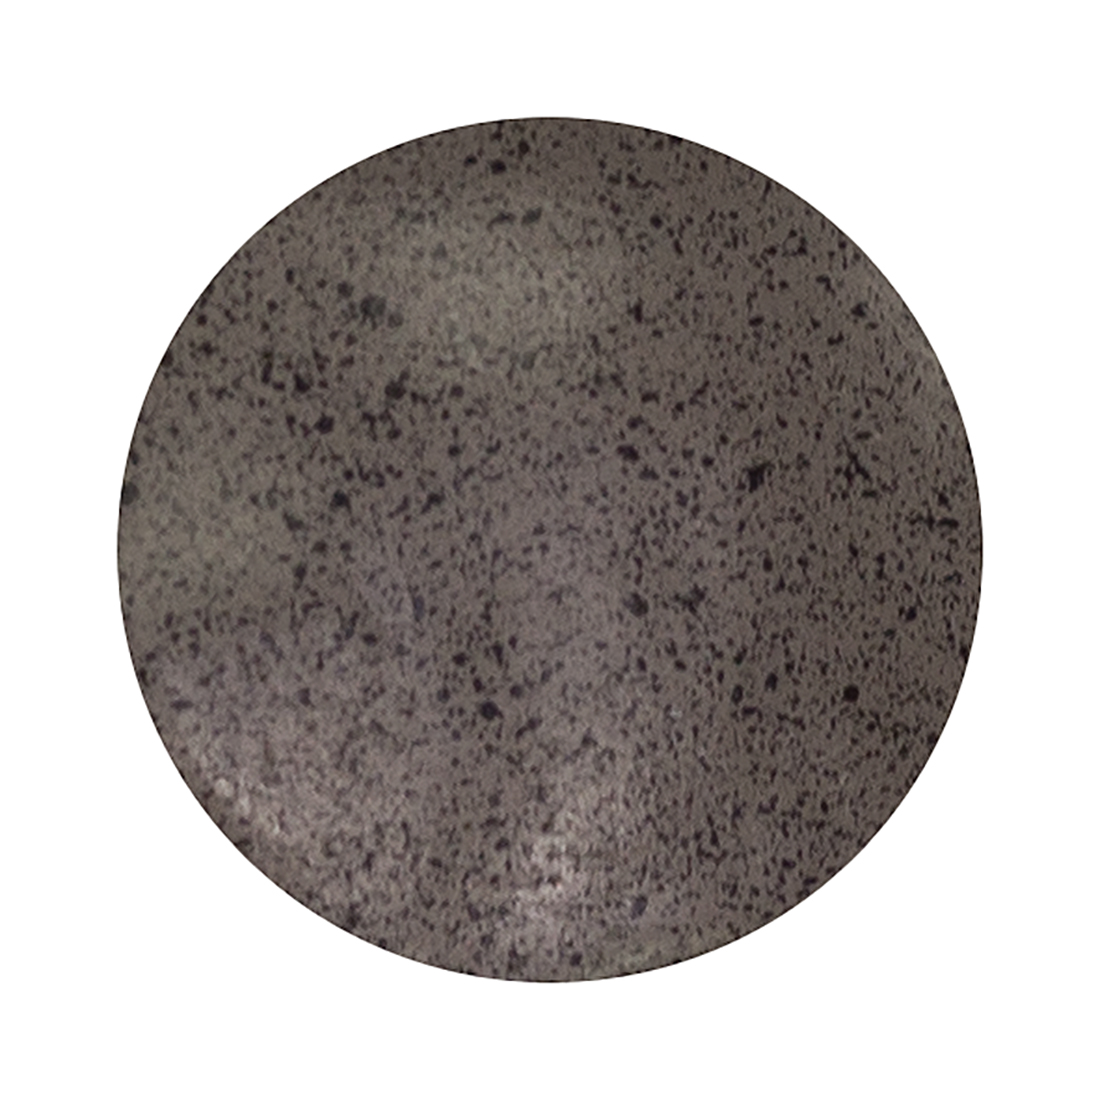 jardinire tte de chihuahua optic pierre granite taupegris